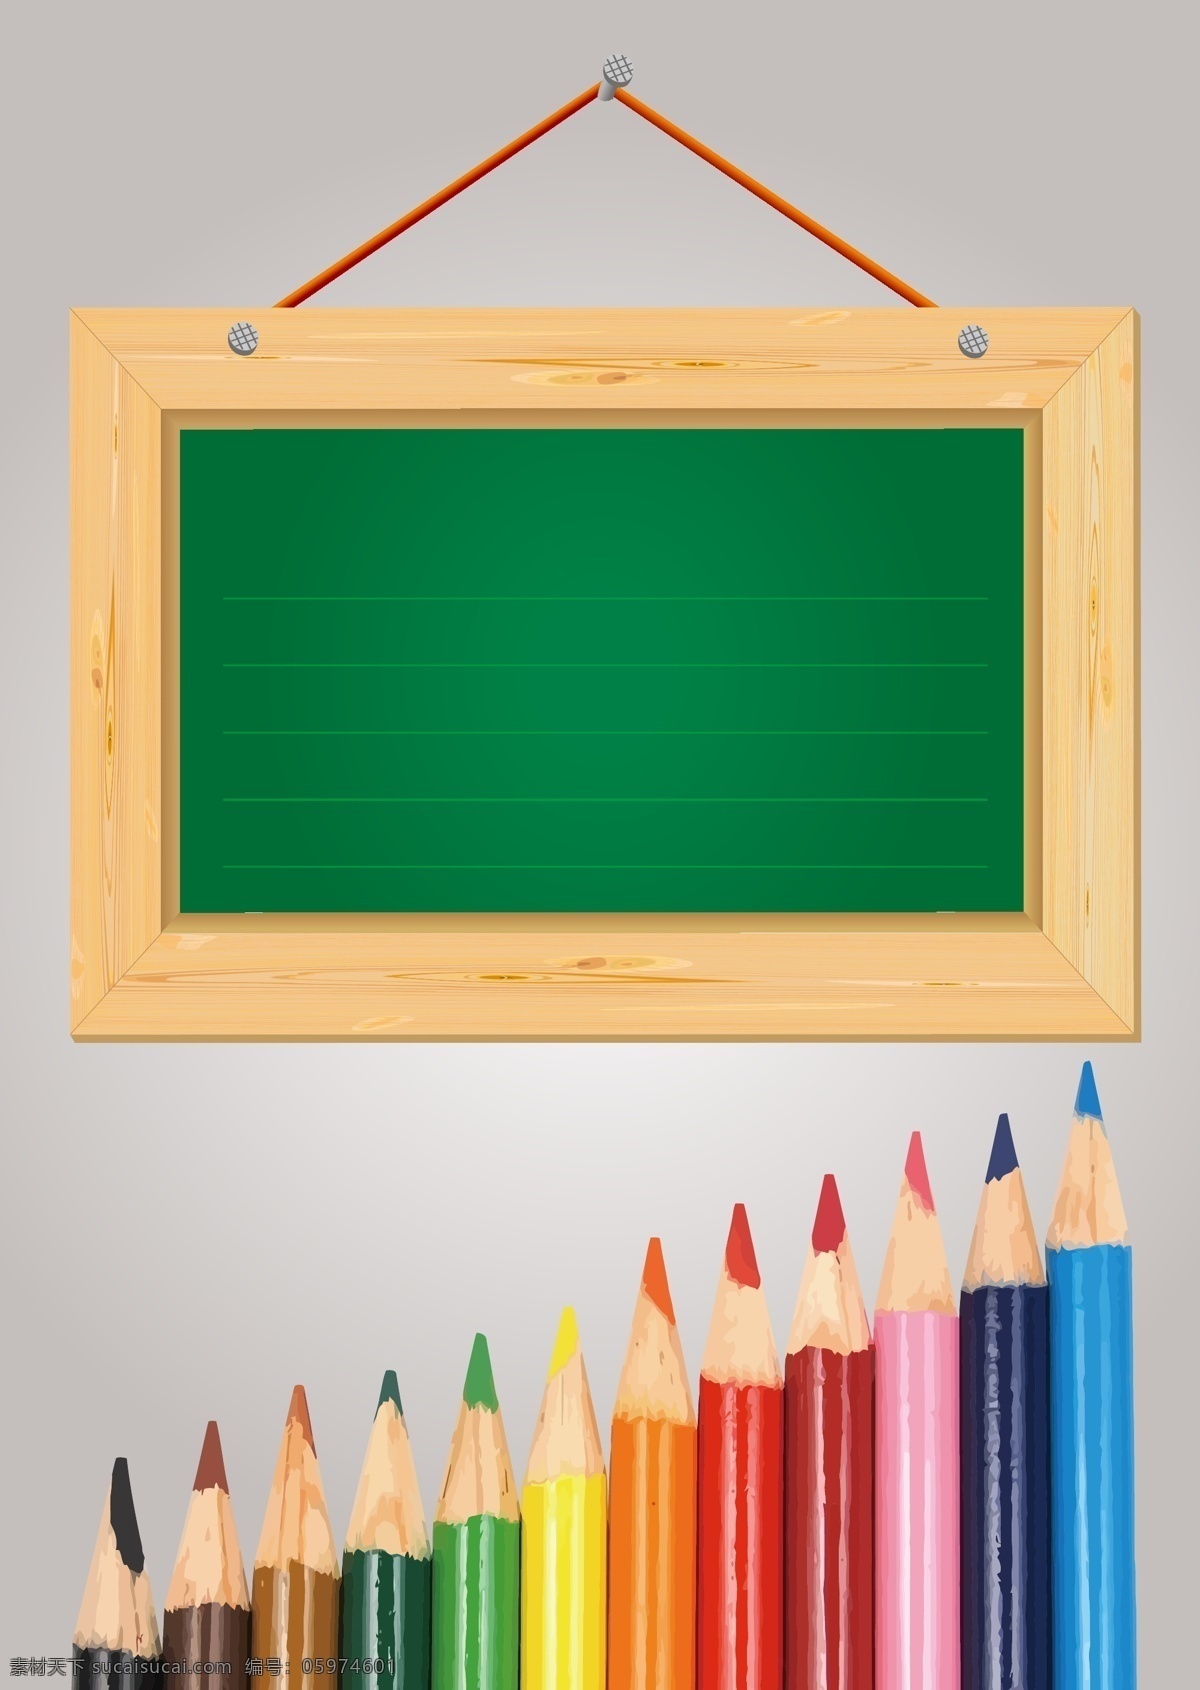 矢量 彩色 铅笔 木牌 教育 背景 手绘 彩色铅笔 海报 卡通 童趣